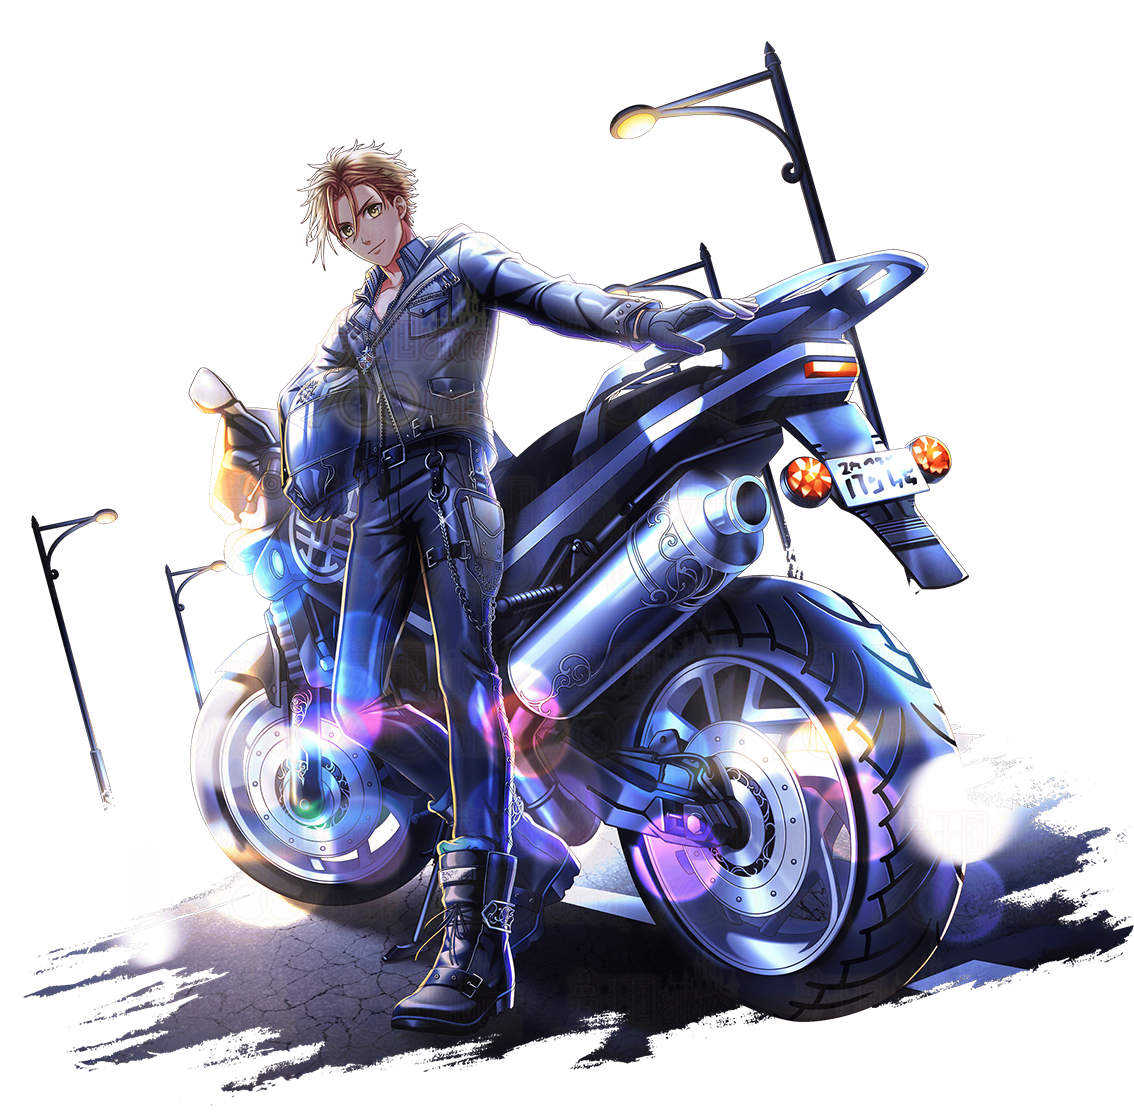 Prytwen (Top Rider) | Yume 100 English Wiki | Fandom